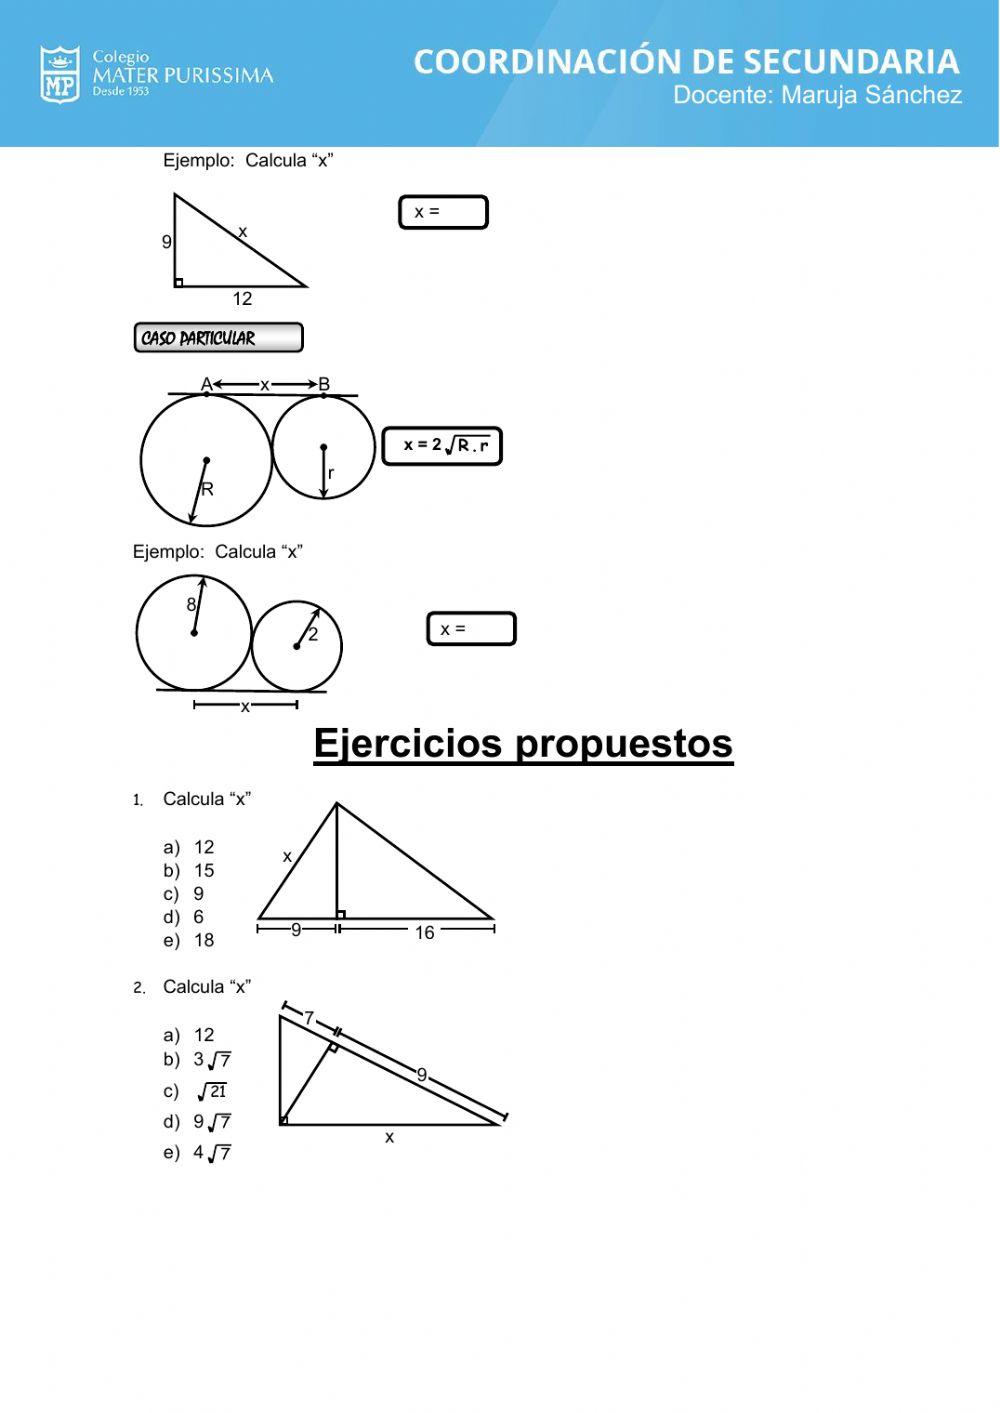 Relaciones métricas en el triangulo rectángulo